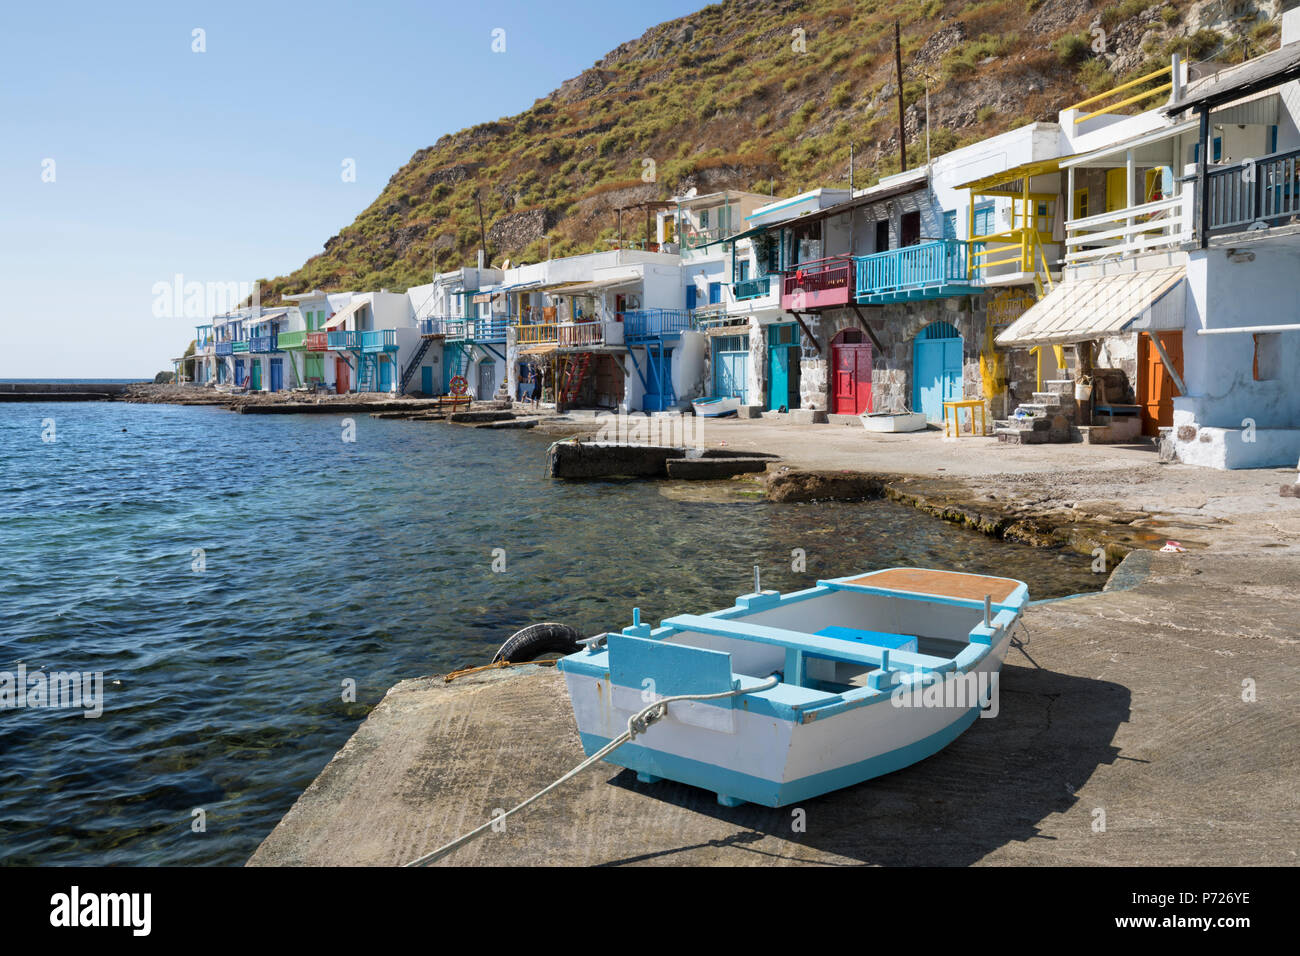 Le bateau de pêcheurs colorés des maisons, Klima, Milos, Cyclades, Mer Égée, îles grecques, Grèce, Europe Banque D'Images